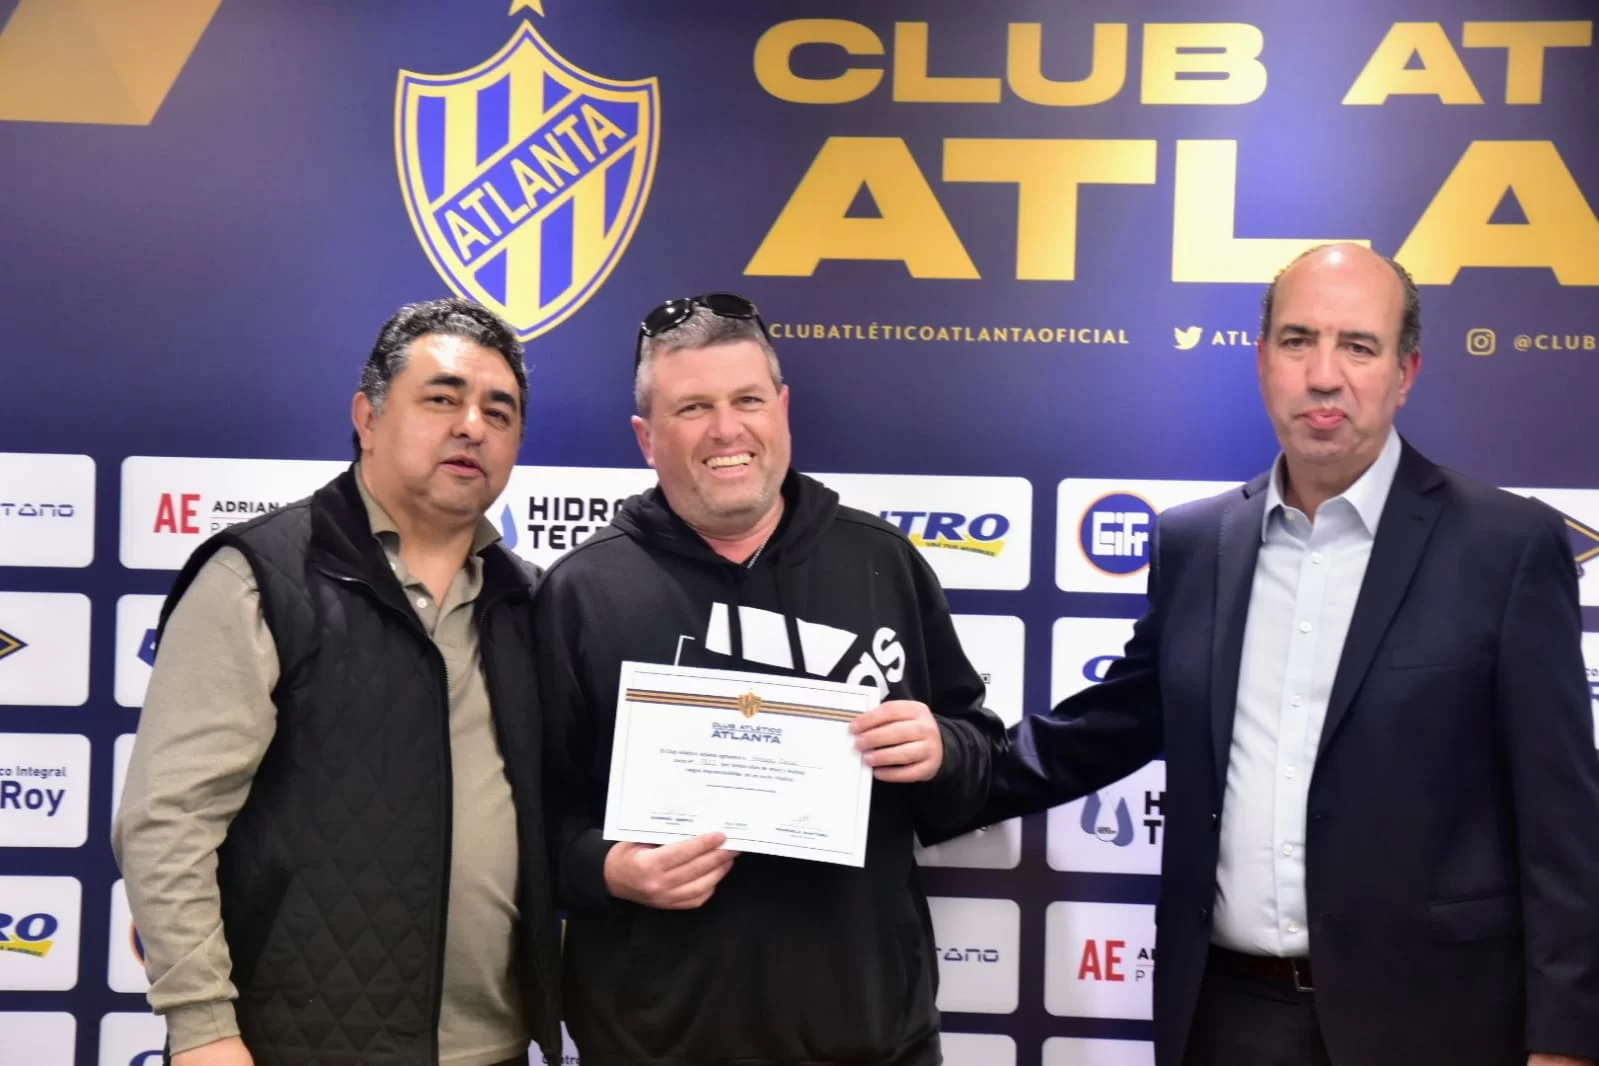 Entrega de diplomas a vitalicios - Club Atlético Atlanta